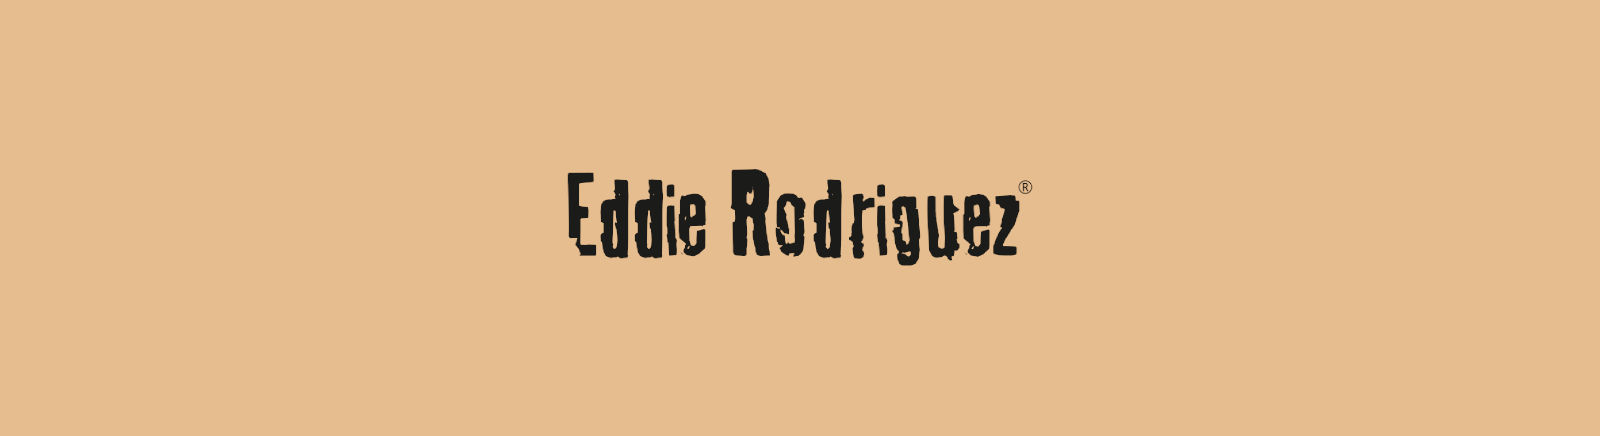 Prange: Eddie Rodriguez Moon Boots für Damen online shoppen